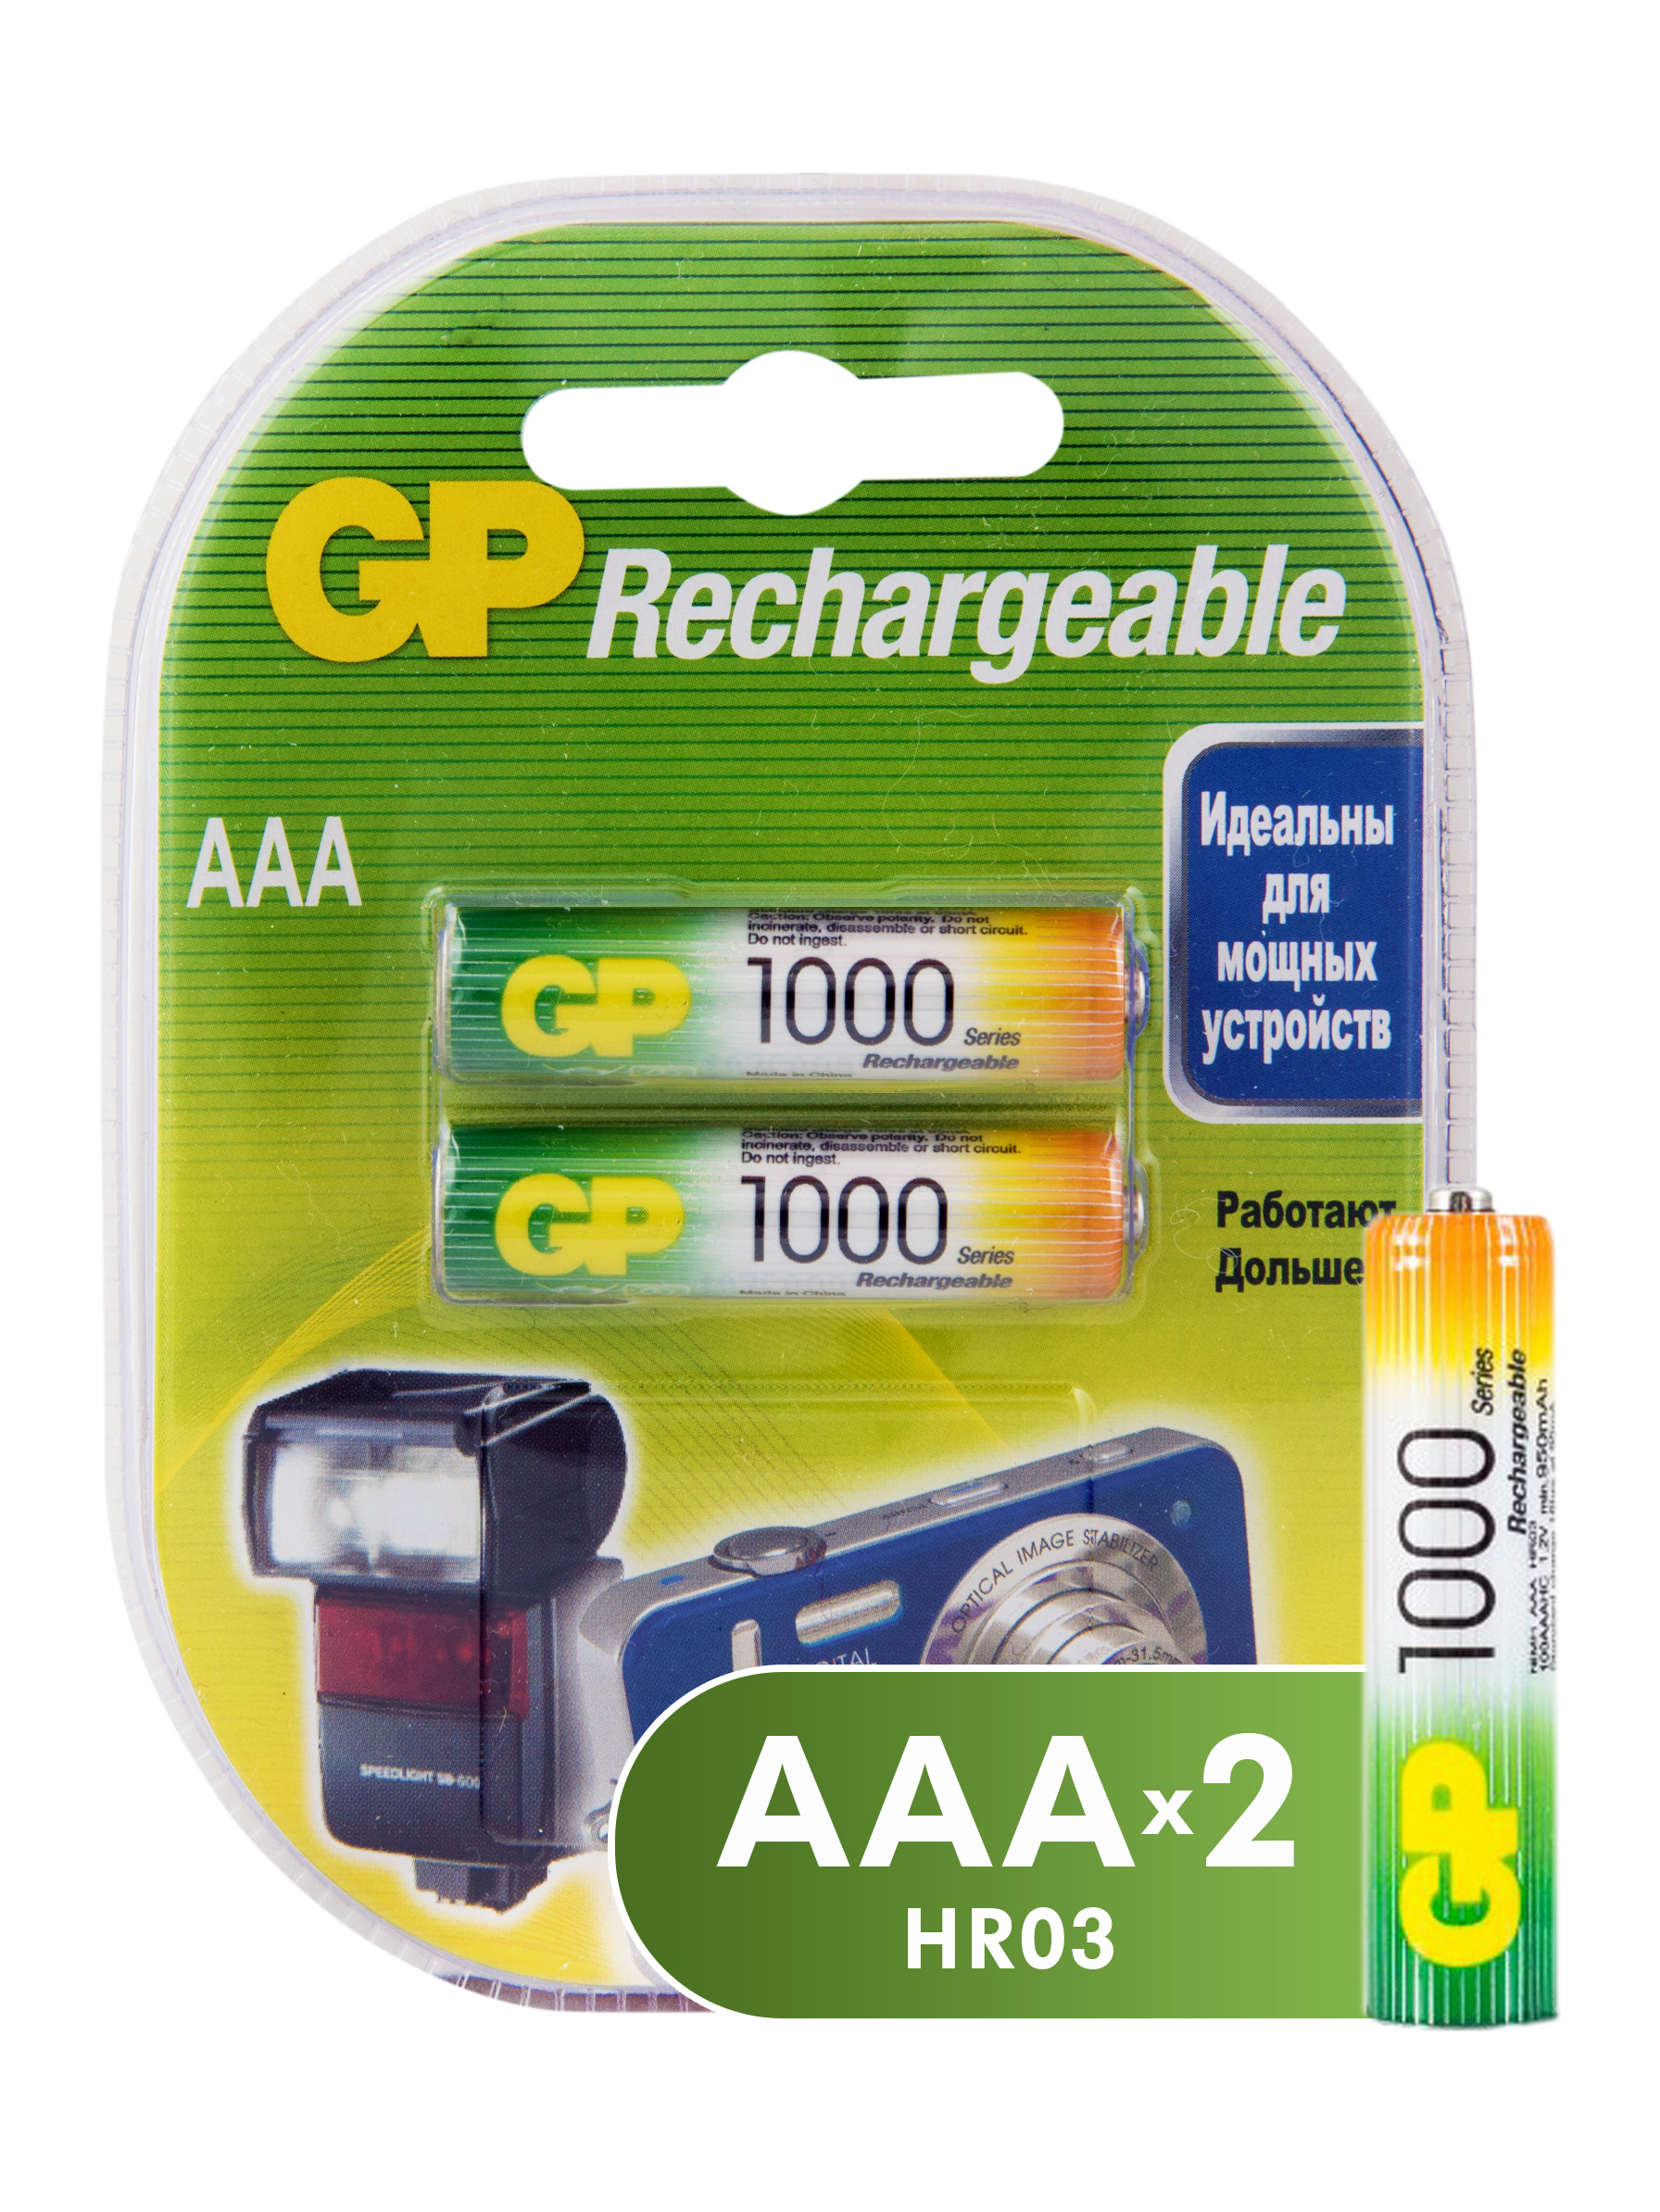 Аккумуляторы GP Batteries перезаряжаемые, AAA, 930 мАч, 2 шт набор аккумуляторов gp batteries перезаряжаемых аа и aaa 2650 и 930 мач 8 шт